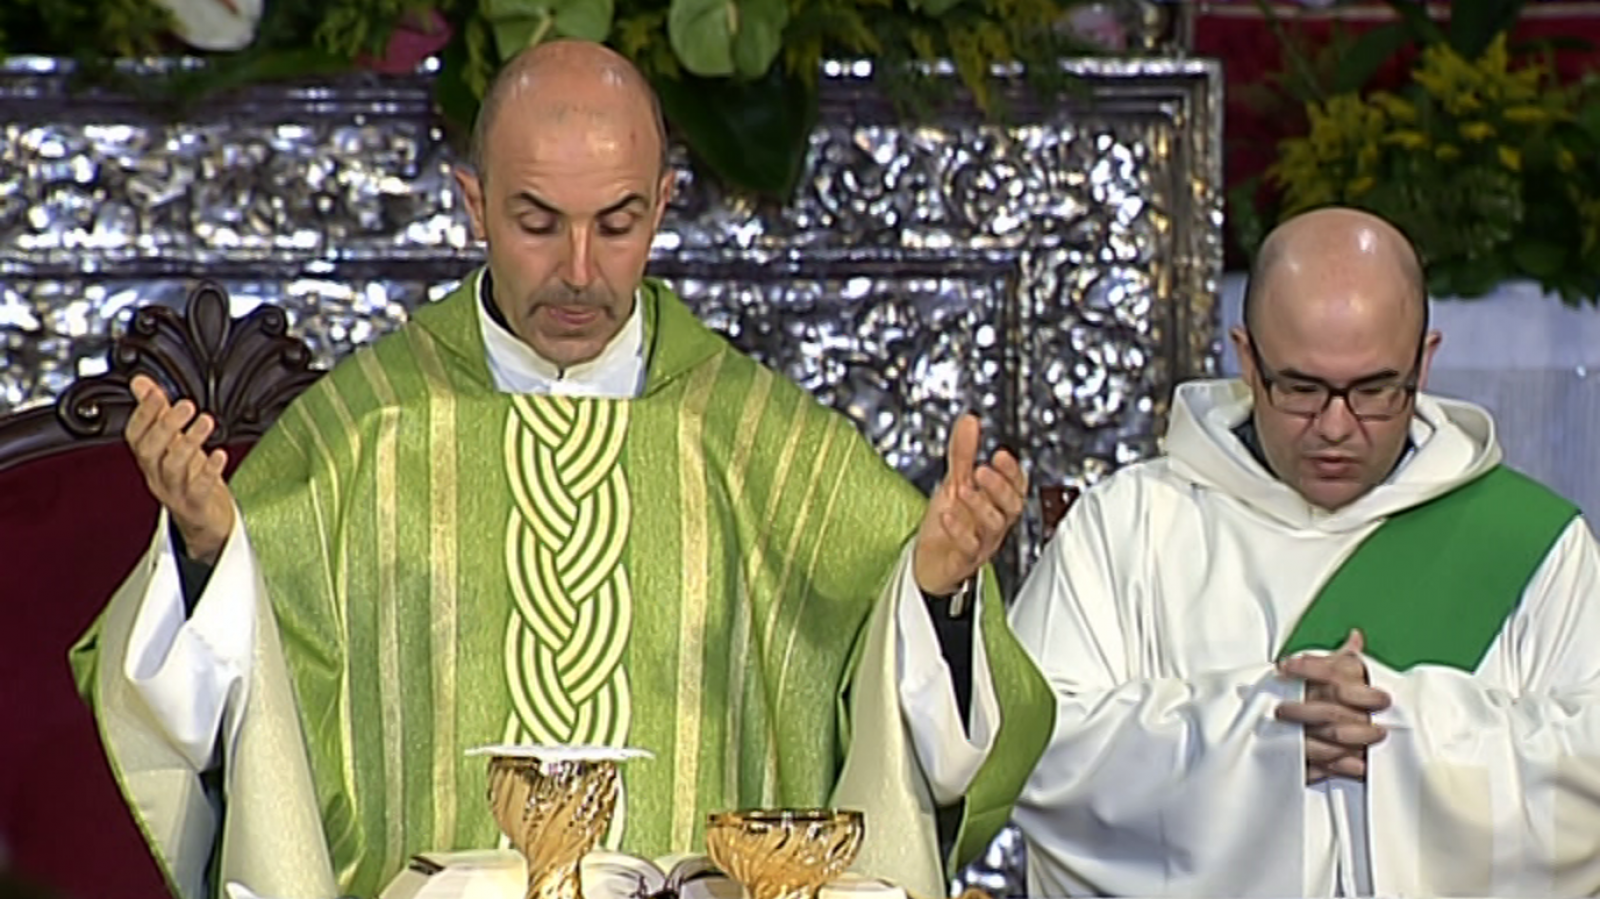 El día del Señor - Santuario de Nuestra Señora del Pino de Teror (Gran Canaria) - ver ahora